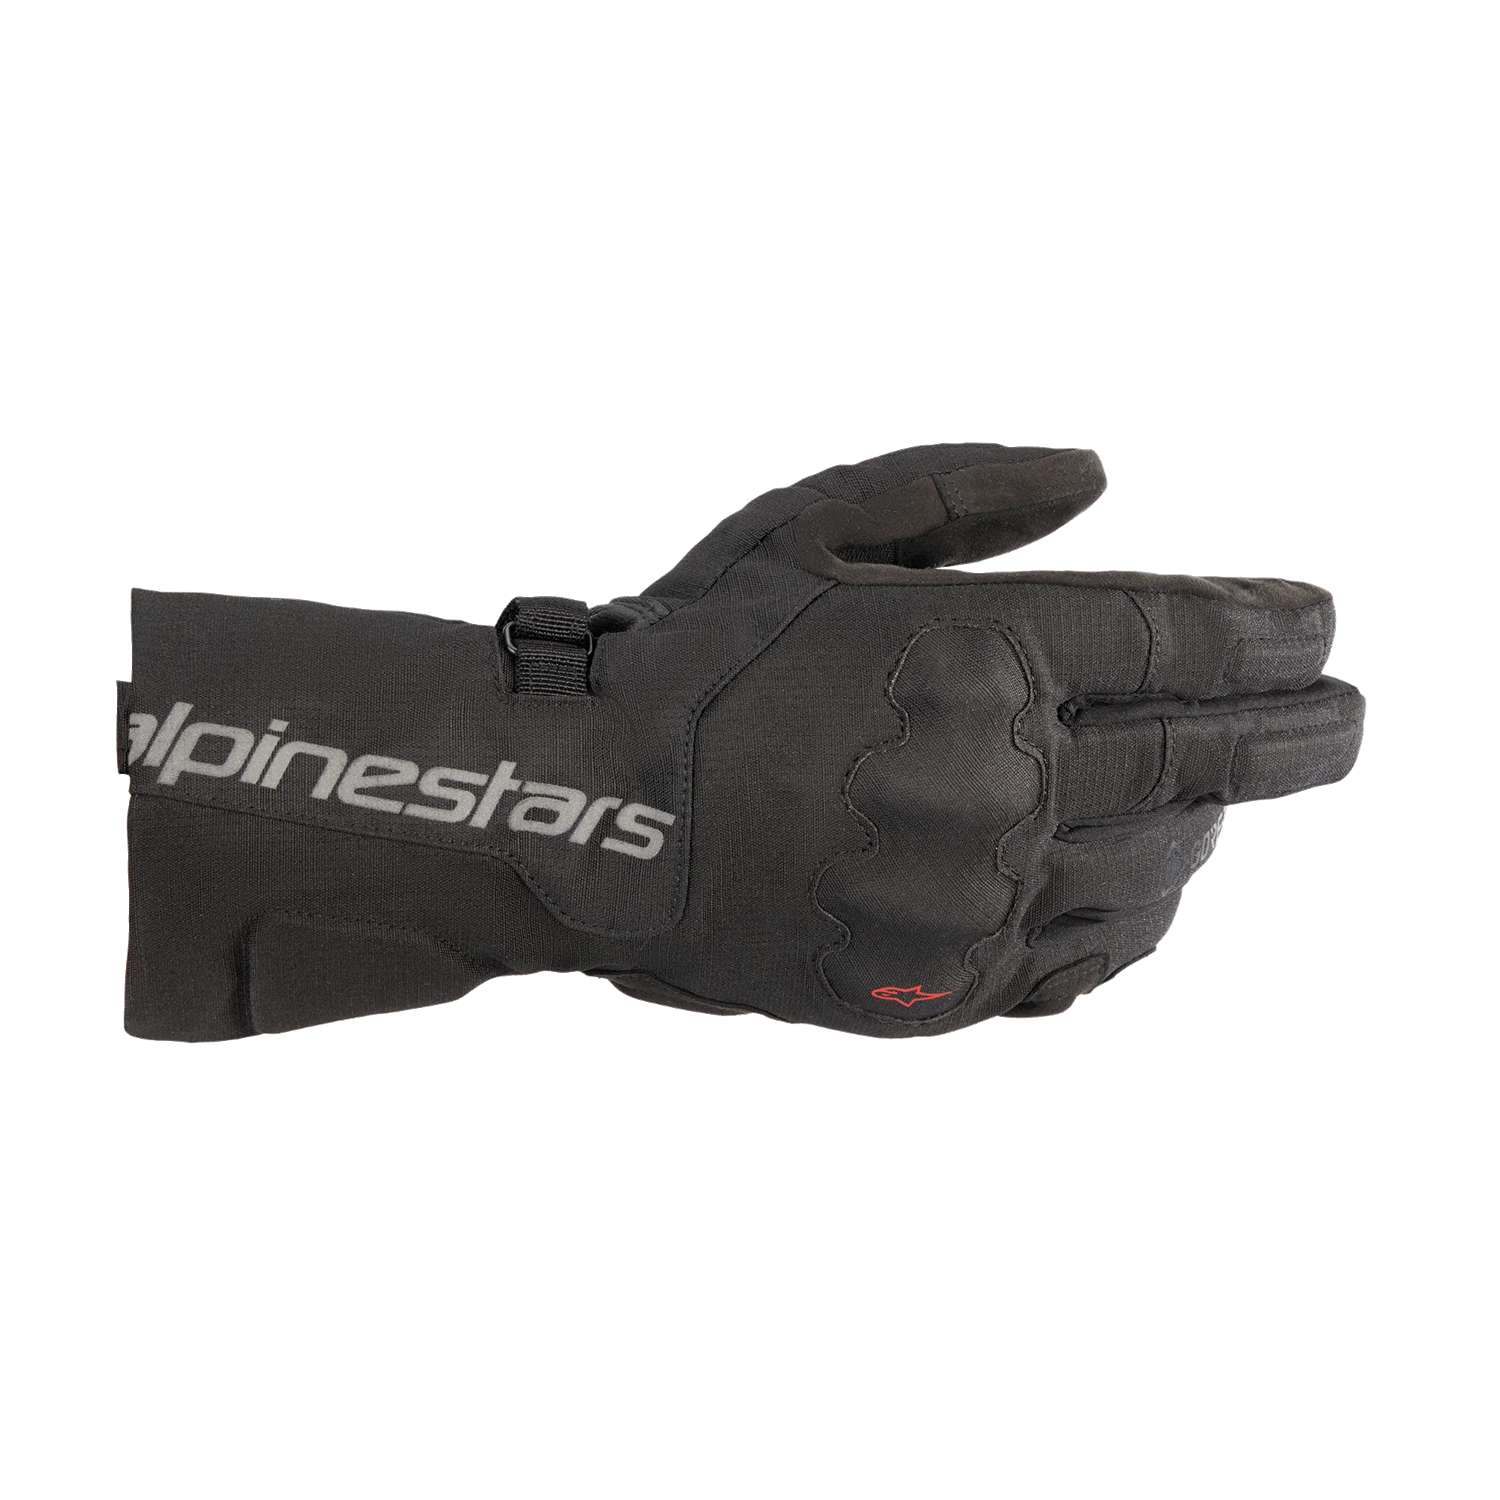 Image of Alpinestars Wr-X Gore-Tex Gloves Black Größe 2XL